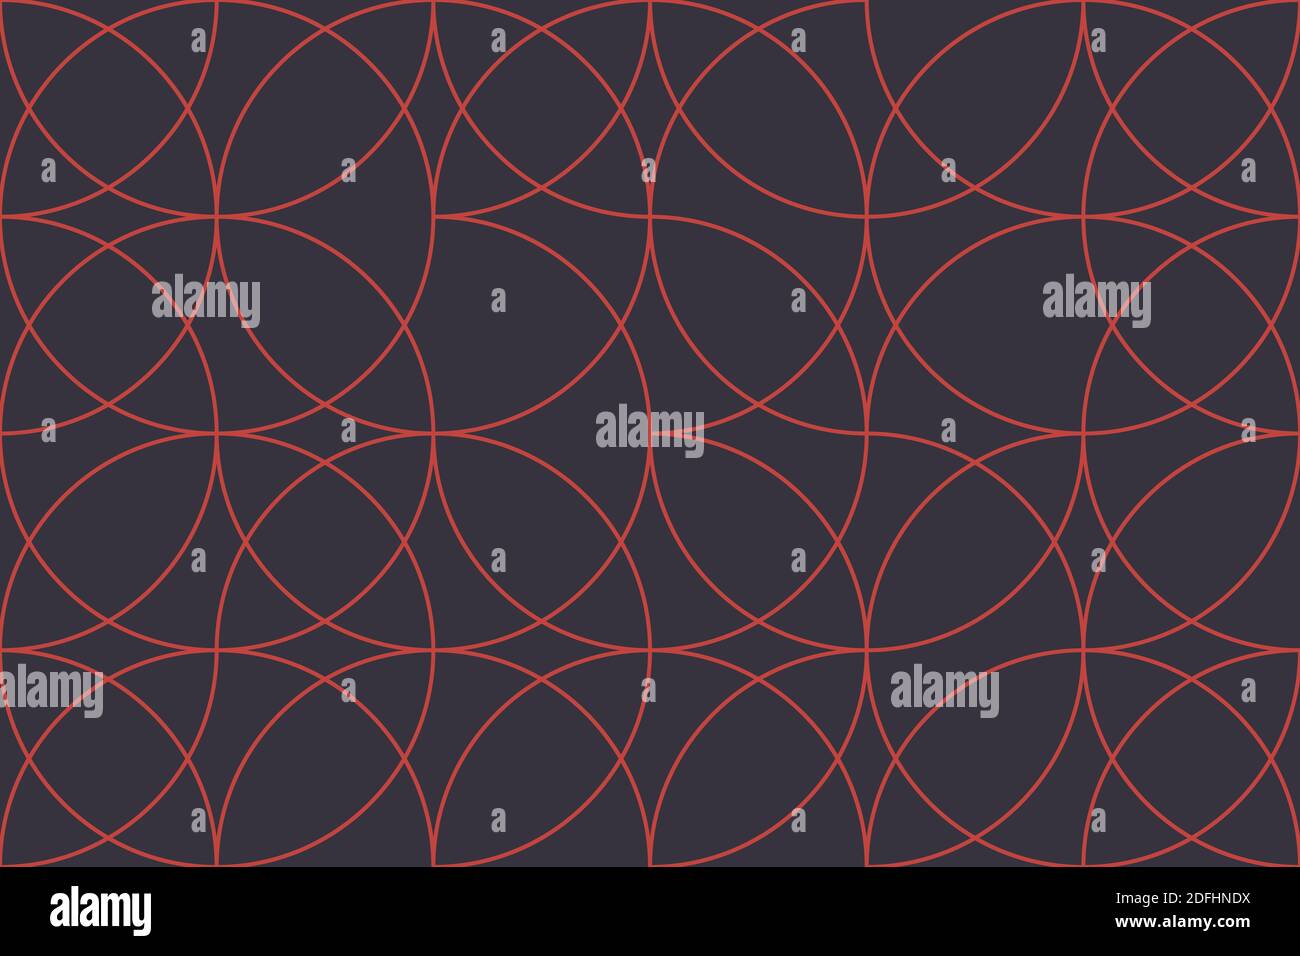 Patrón de fondo abstracto sin costuras hecho con líneas circulares formando formas geométricas. Arte vectorial moderno y sencillo en colores rojo y gris. Foto de stock